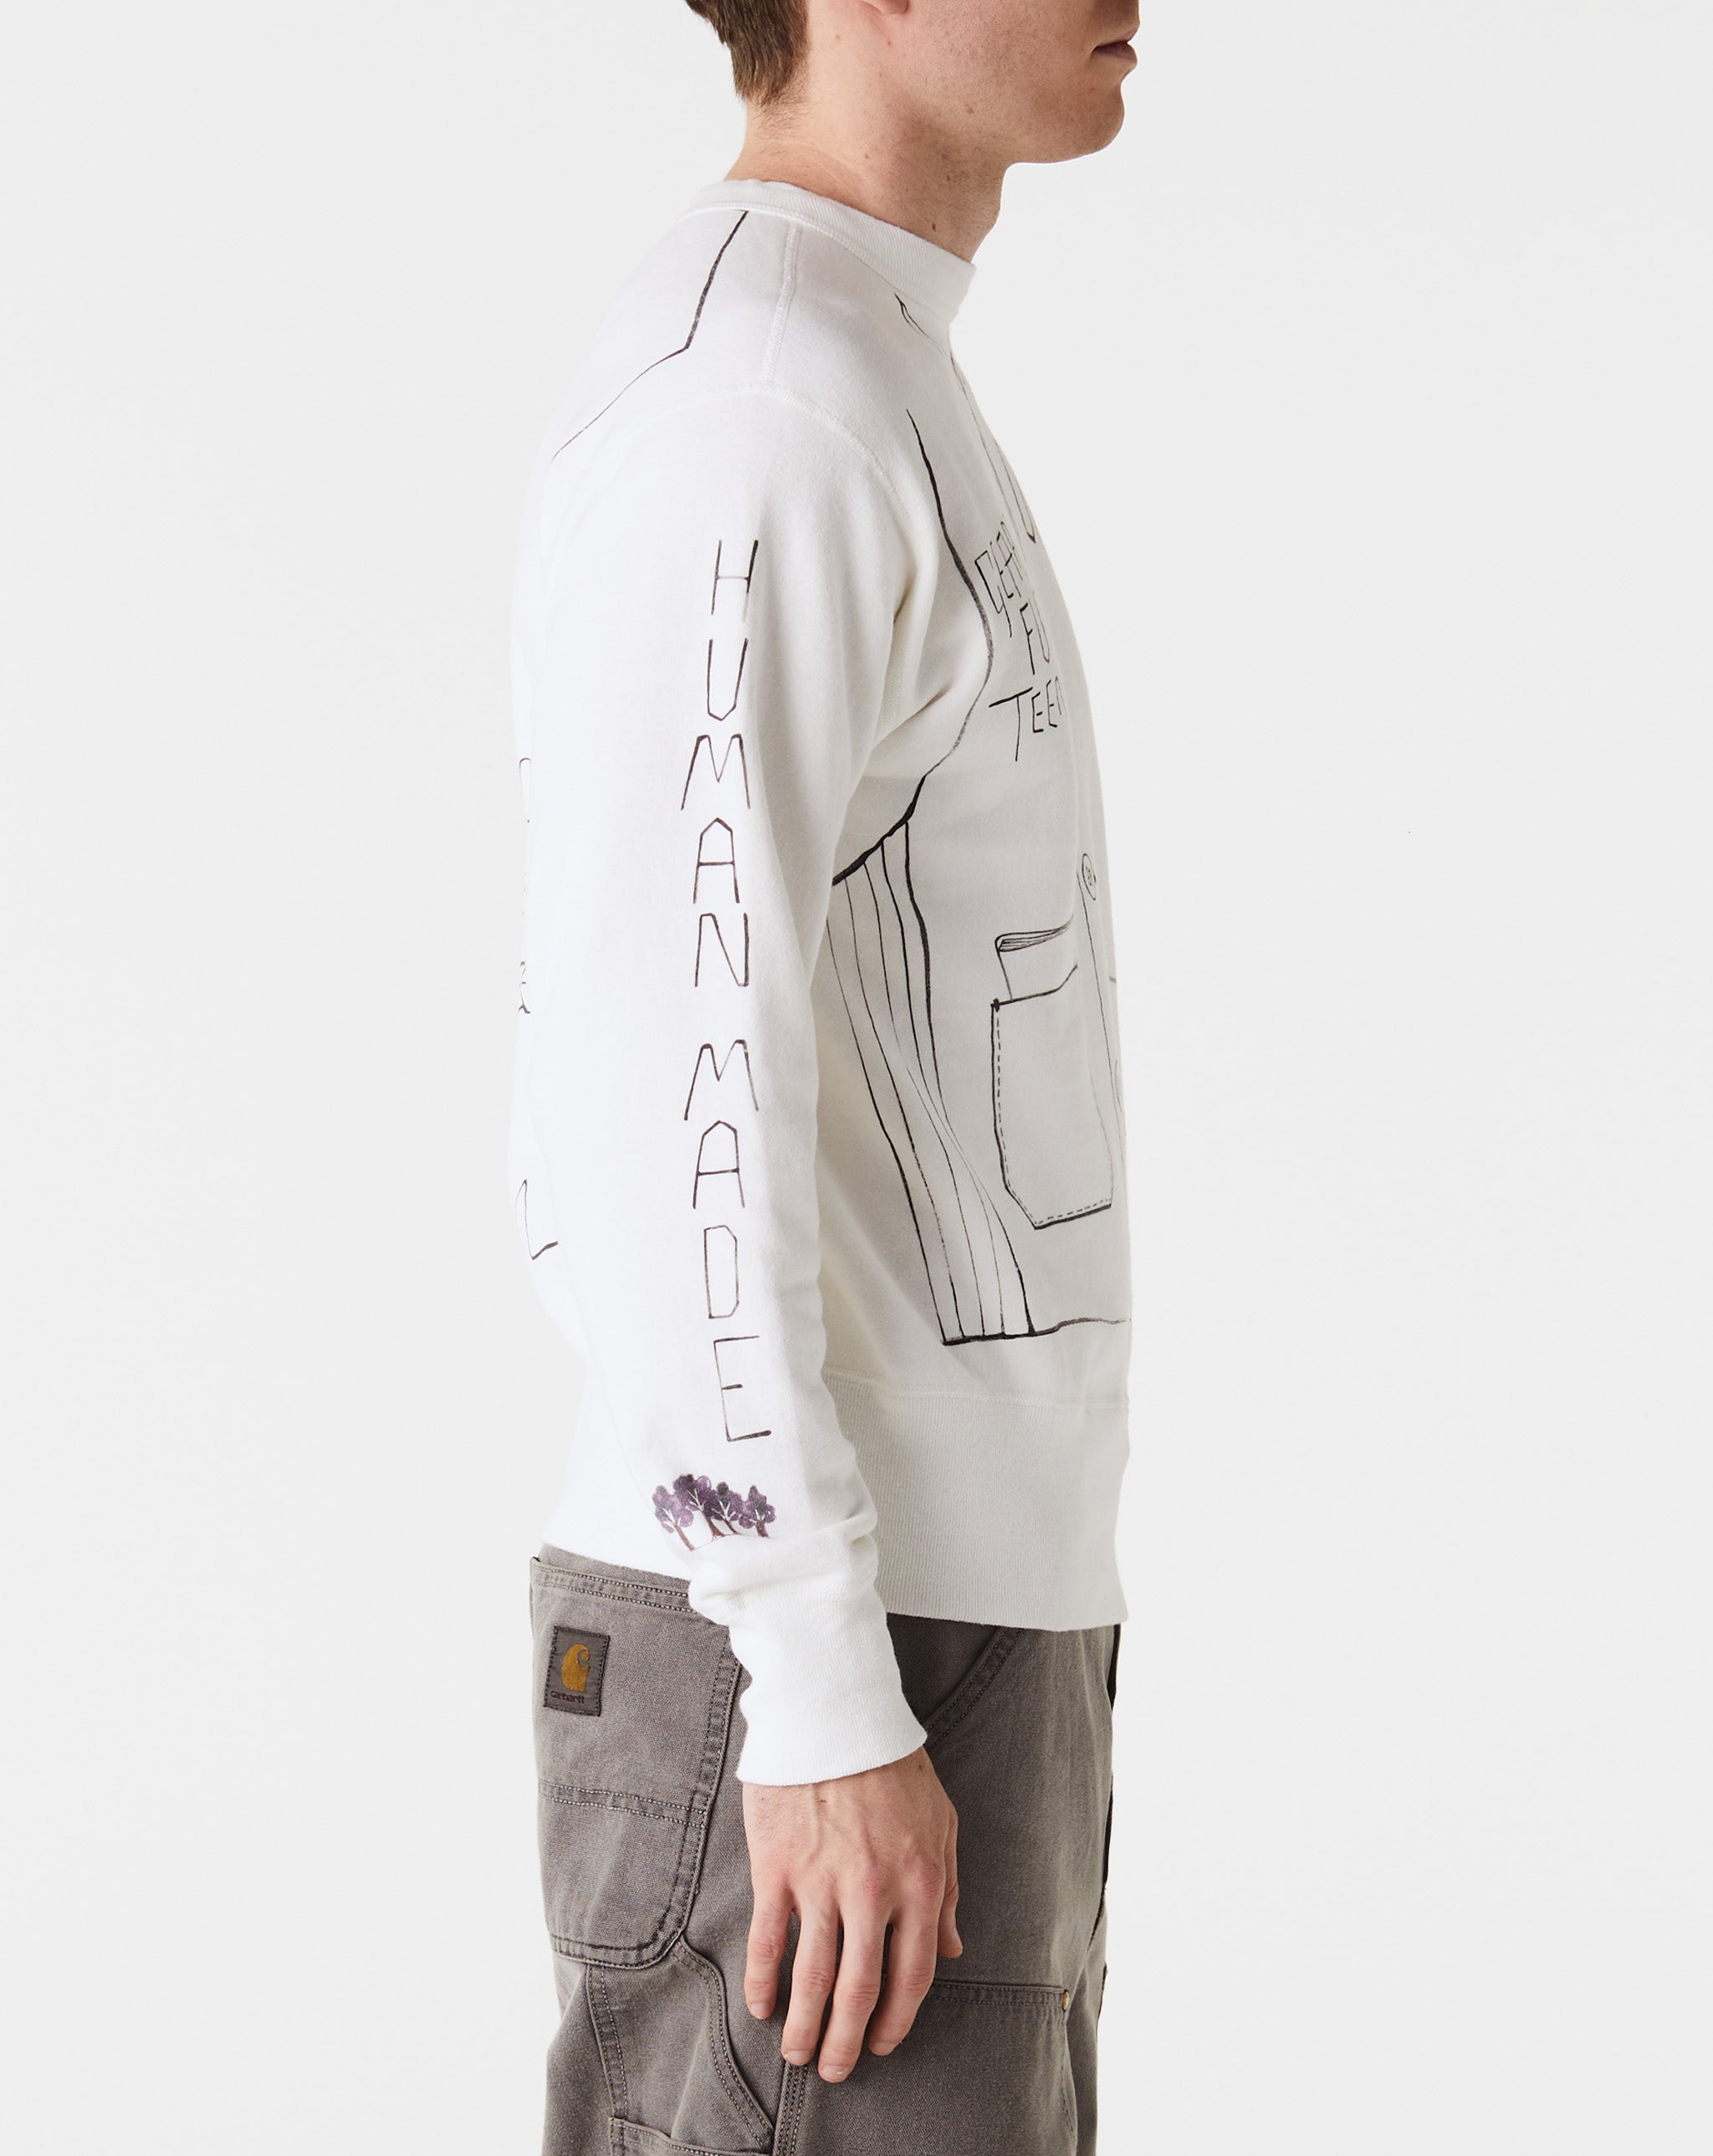 Human Made Graphic Sweatshirt  - Cheap Erlebniswelt-fliegenfischen Jordan outlet